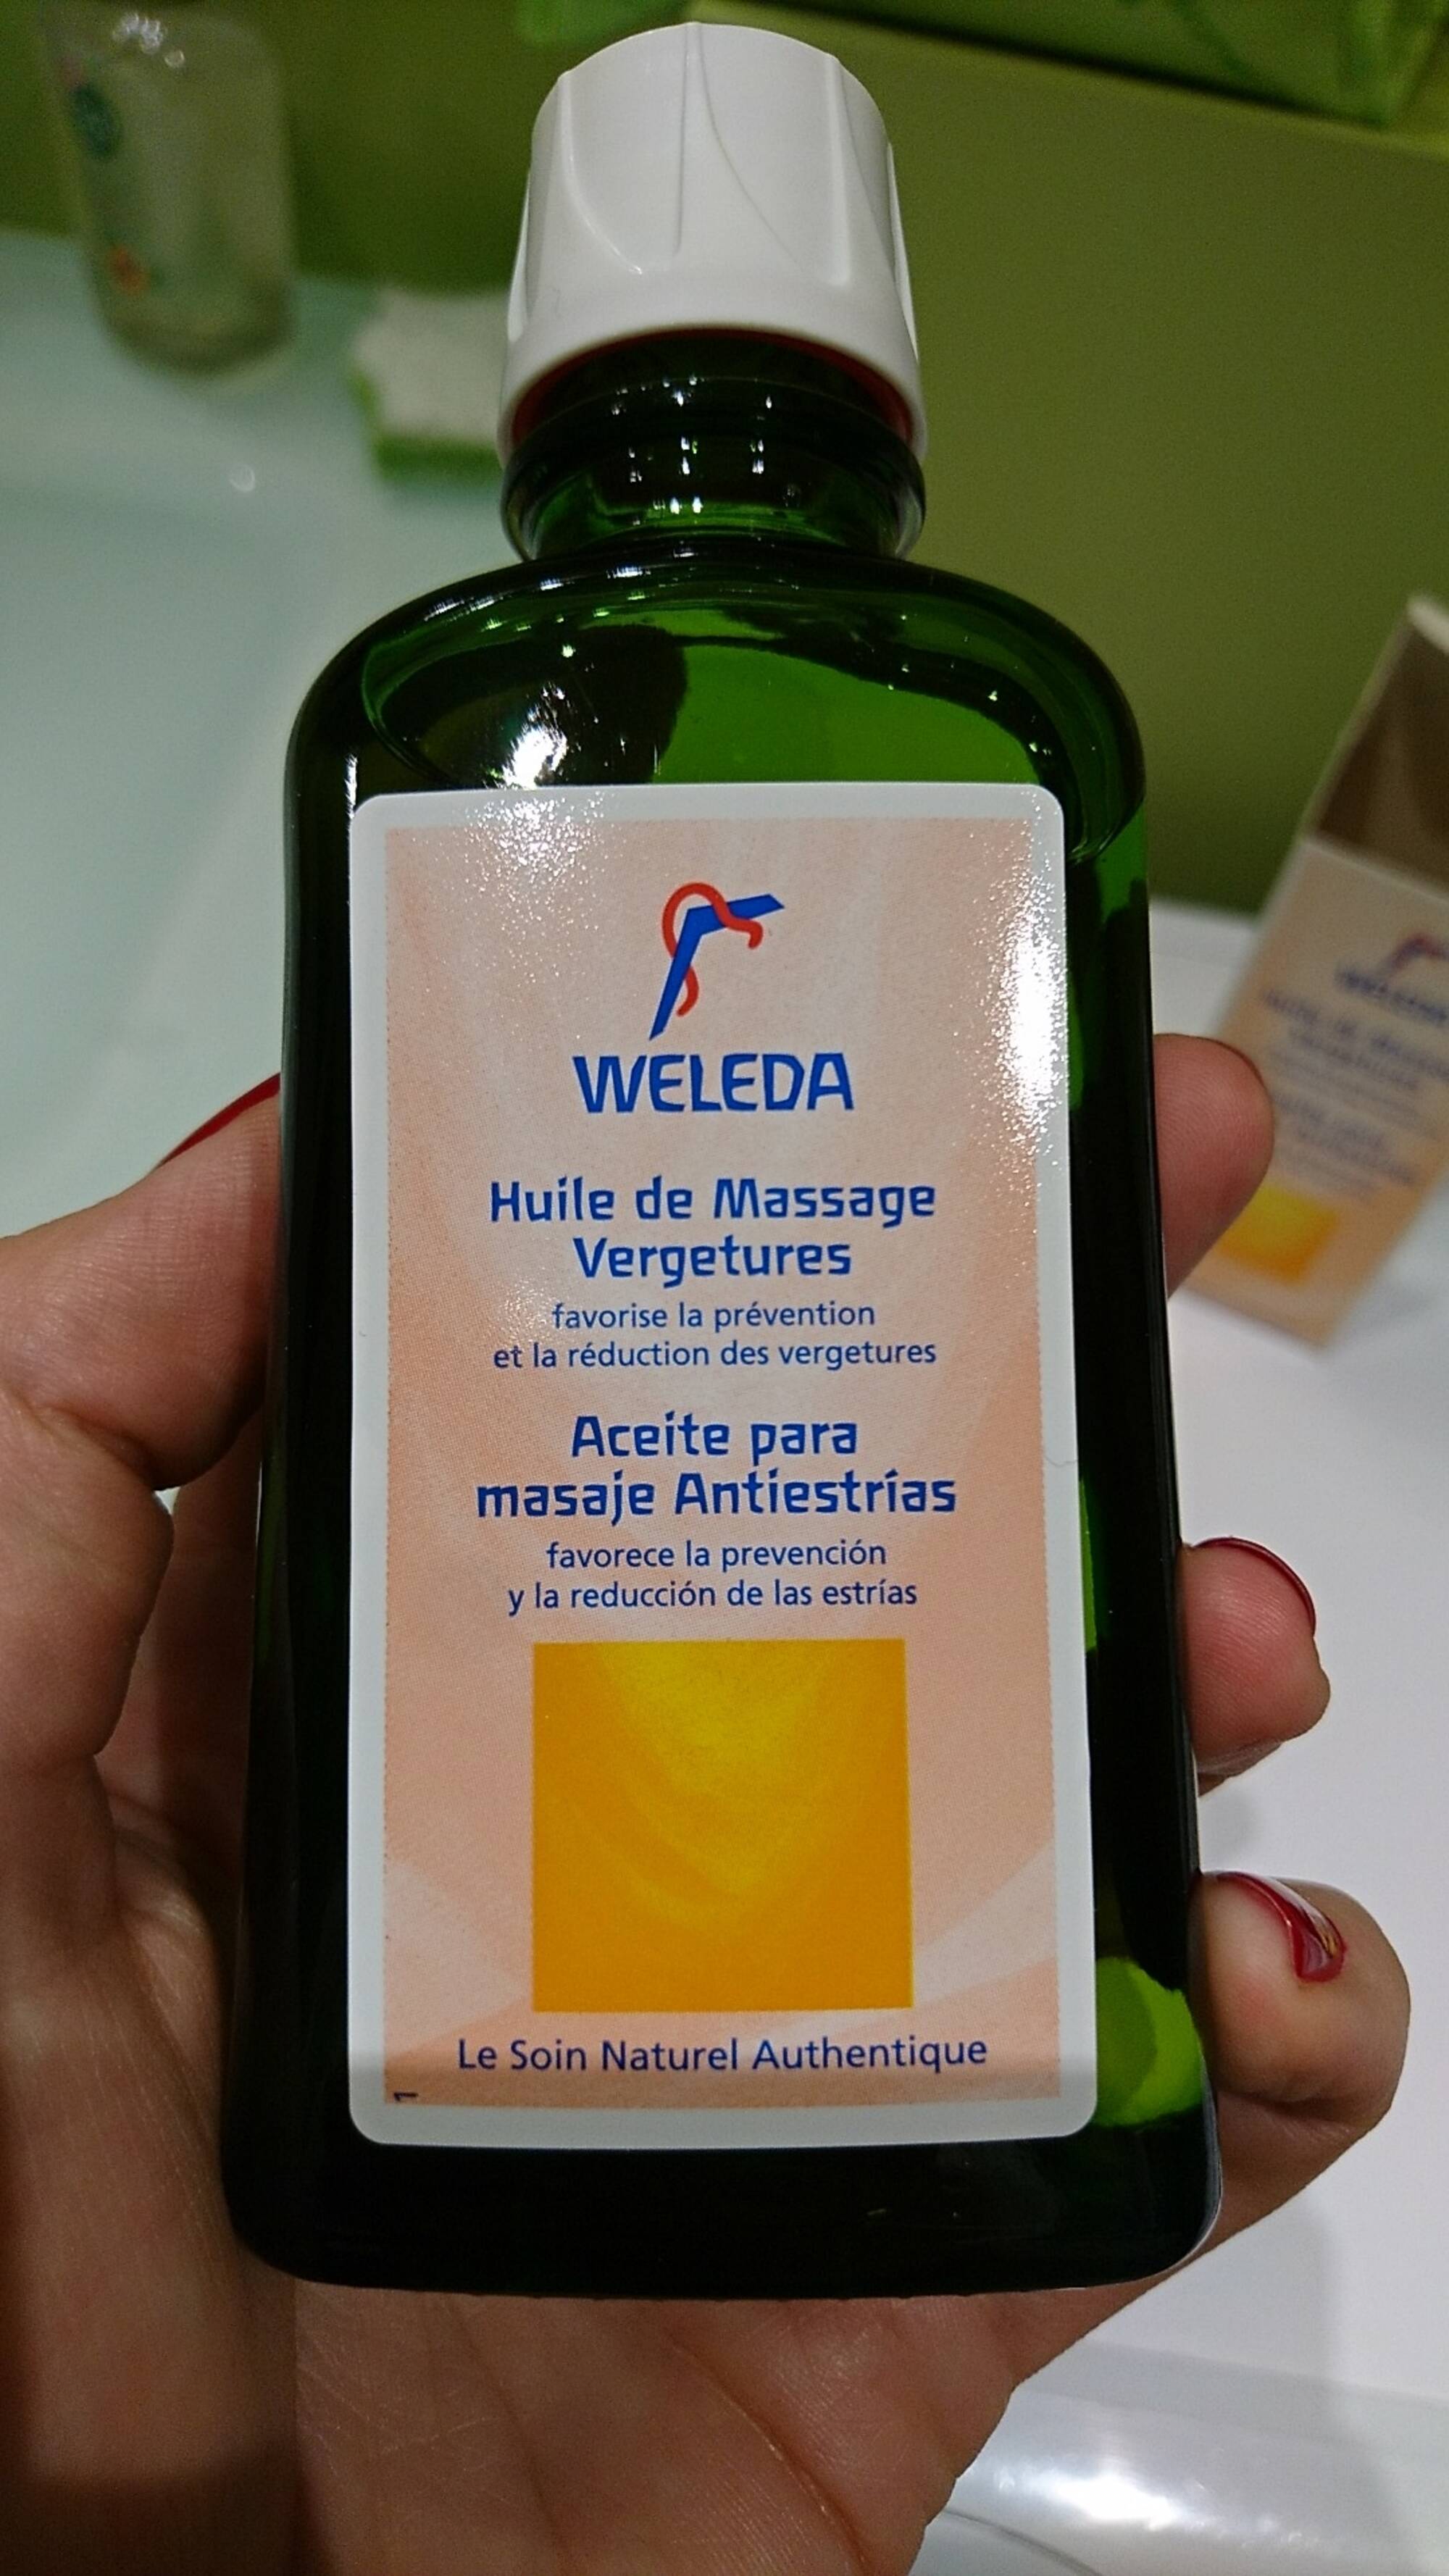 Huile de massage vergetures Weleda